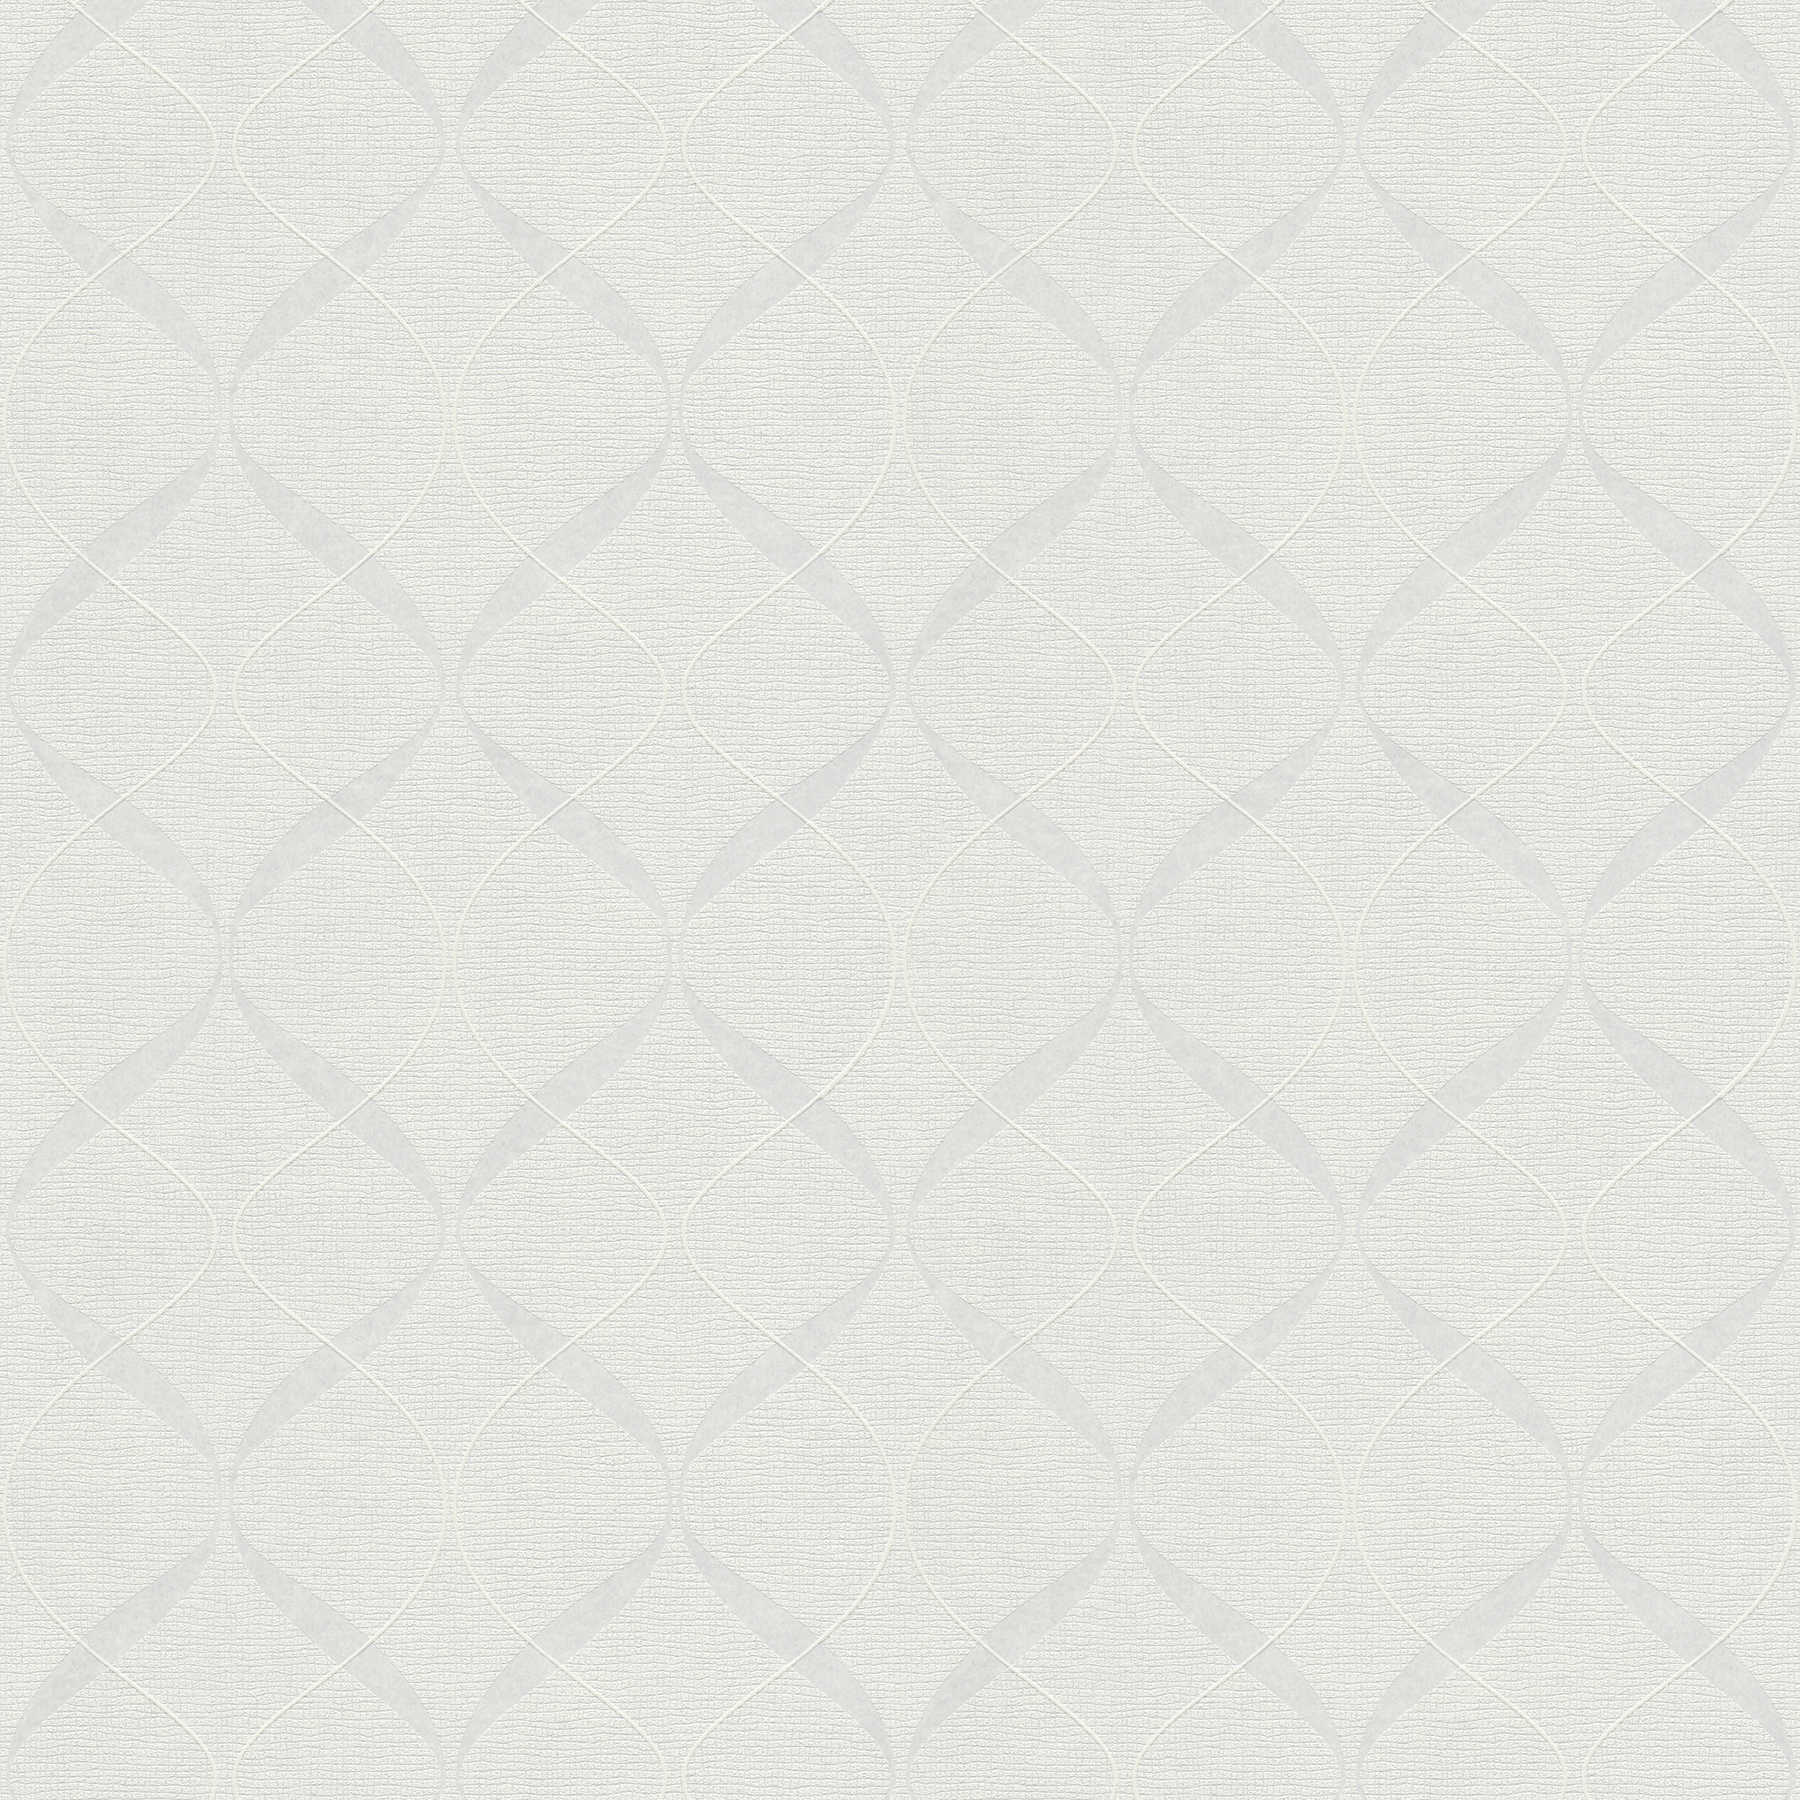 Vliesbehang 3D Textuur Patroon in 60s Retro Stijl - Wit
